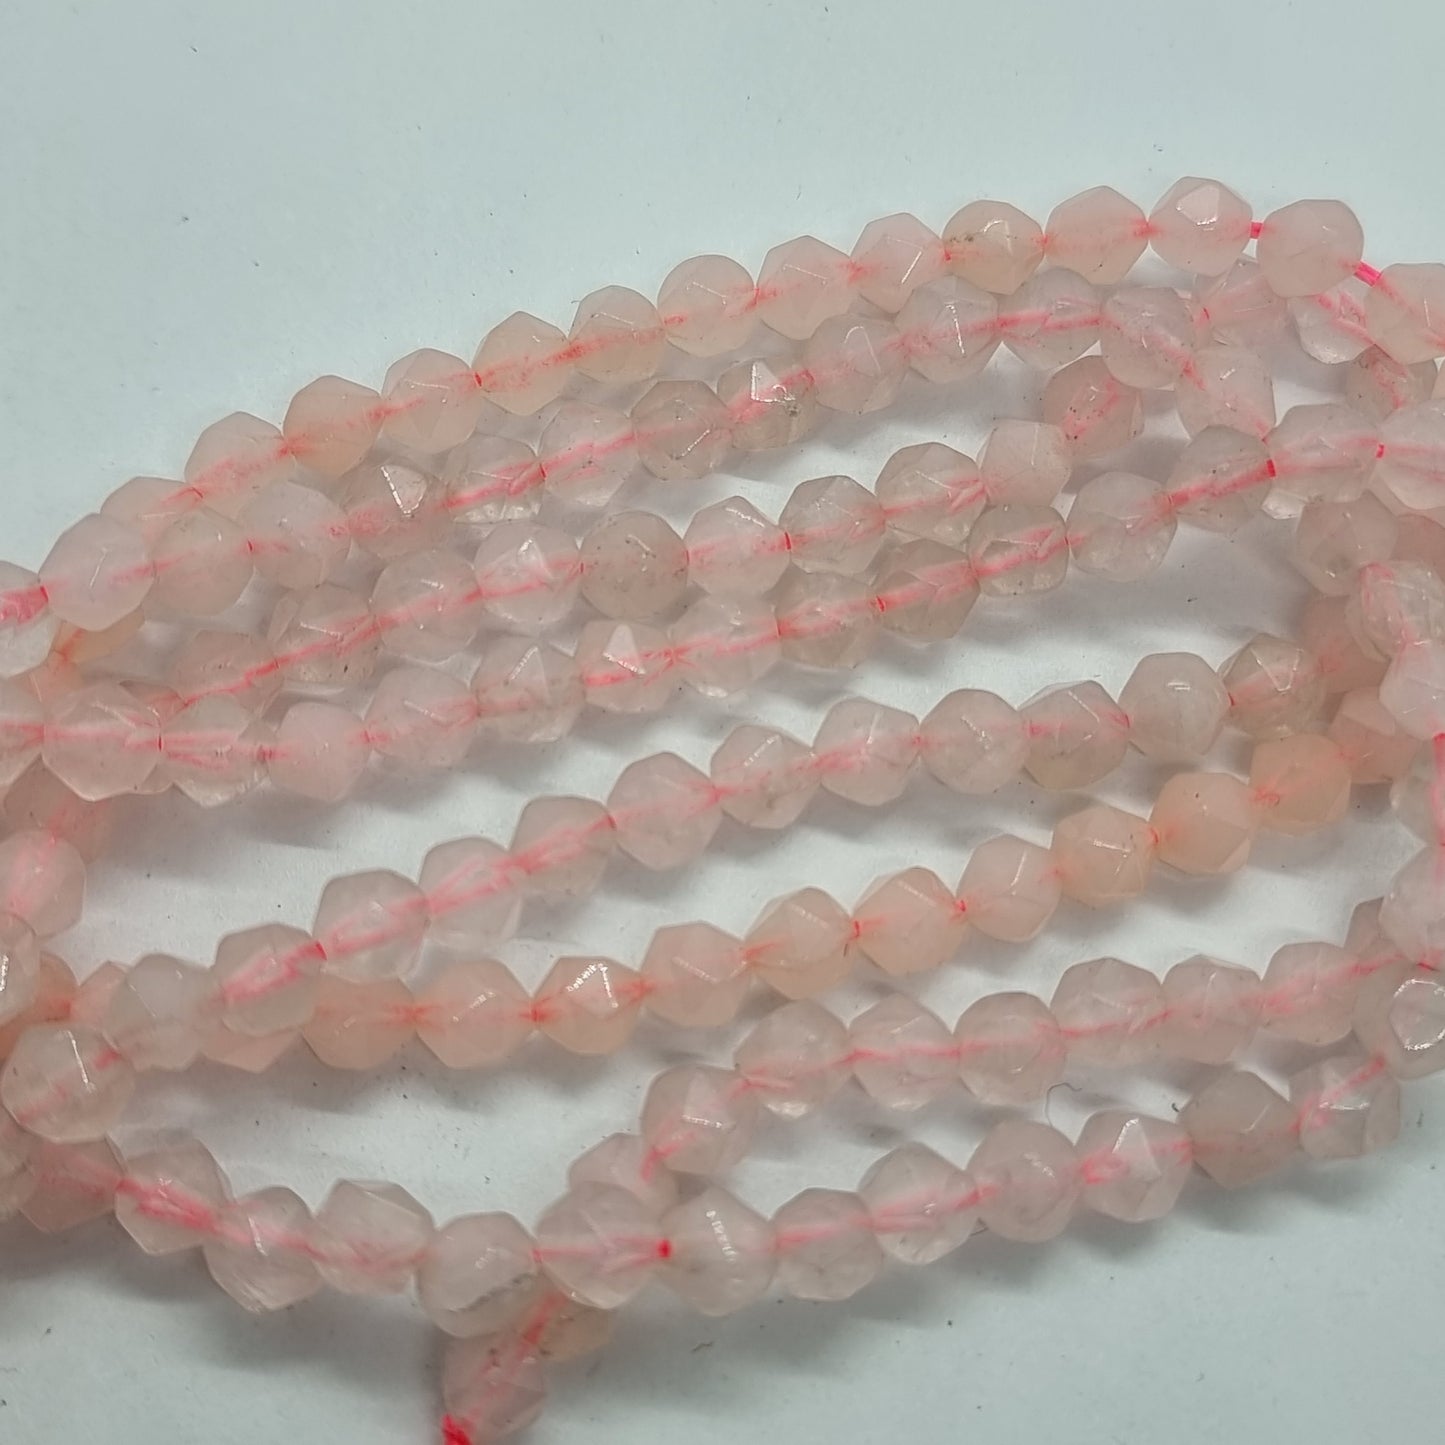 Strand of 6mm New Jade Beads